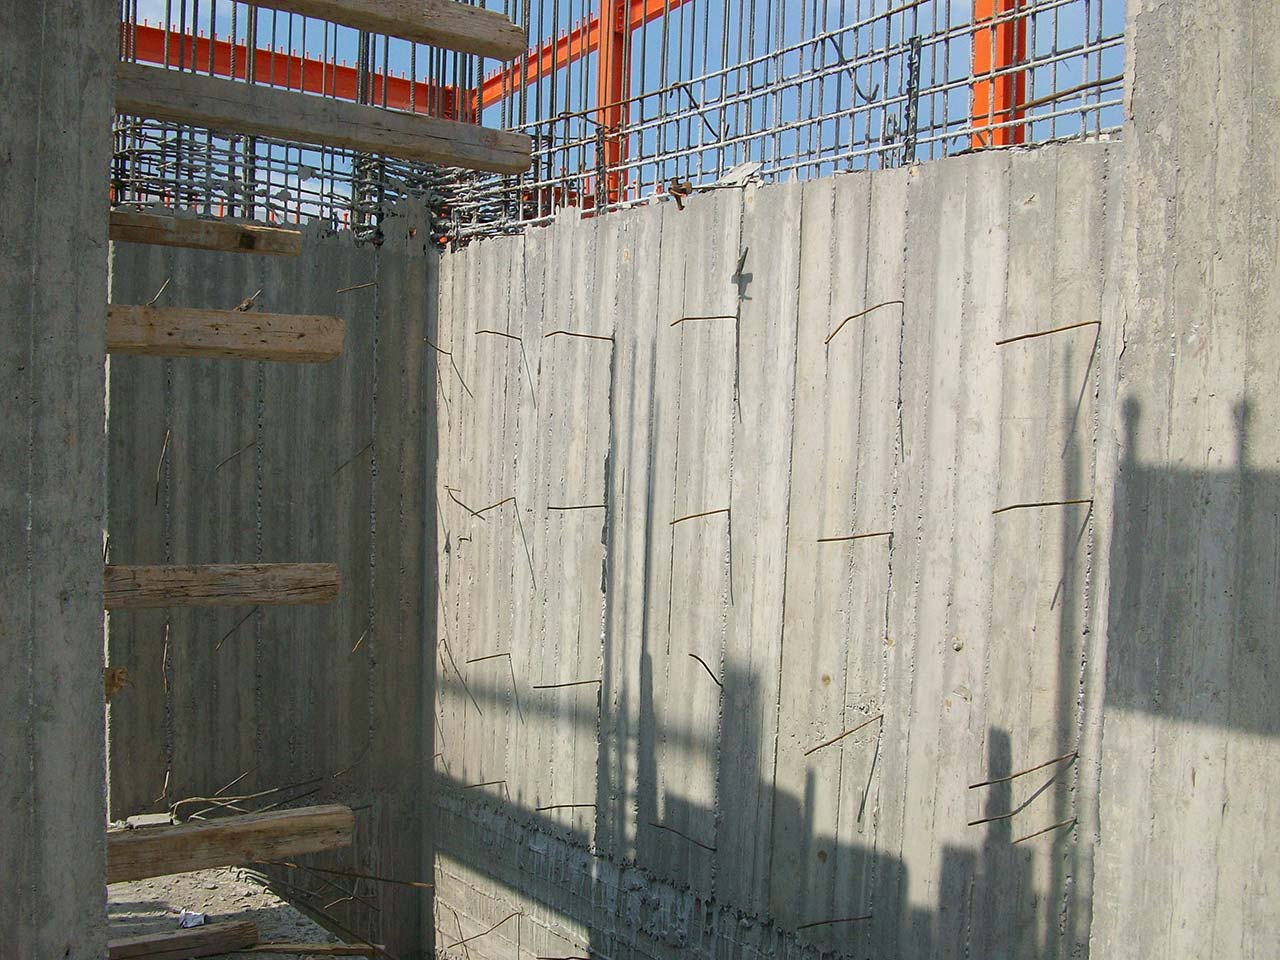 Reinforced concrete shear walls